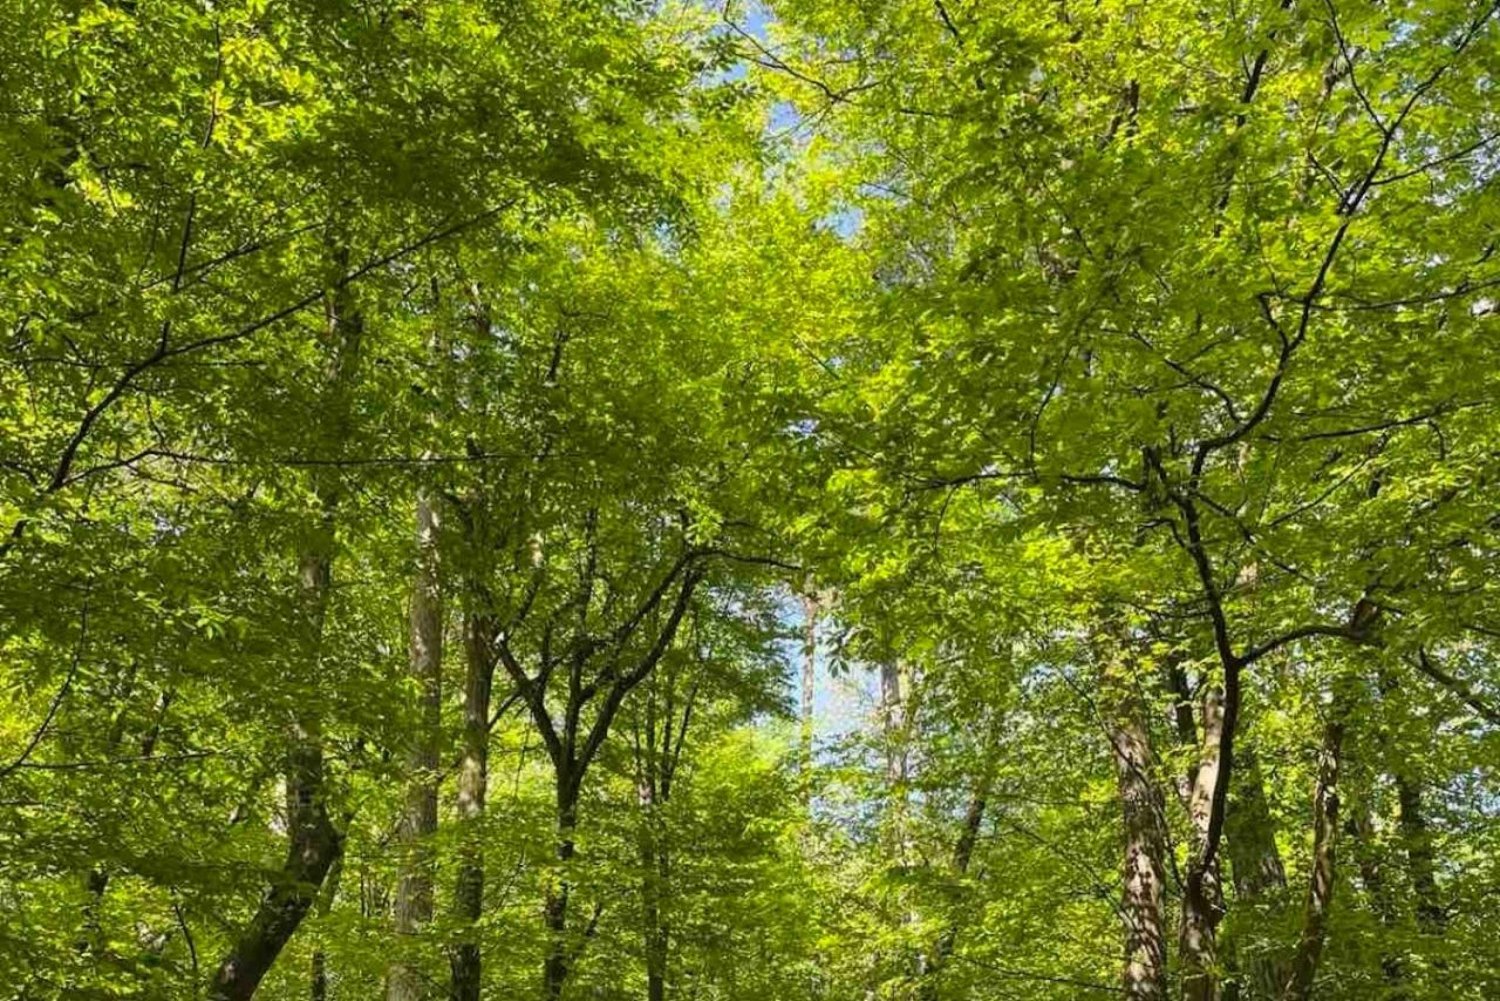 Lubiana: Tour verde e esperienza personale nel bosco